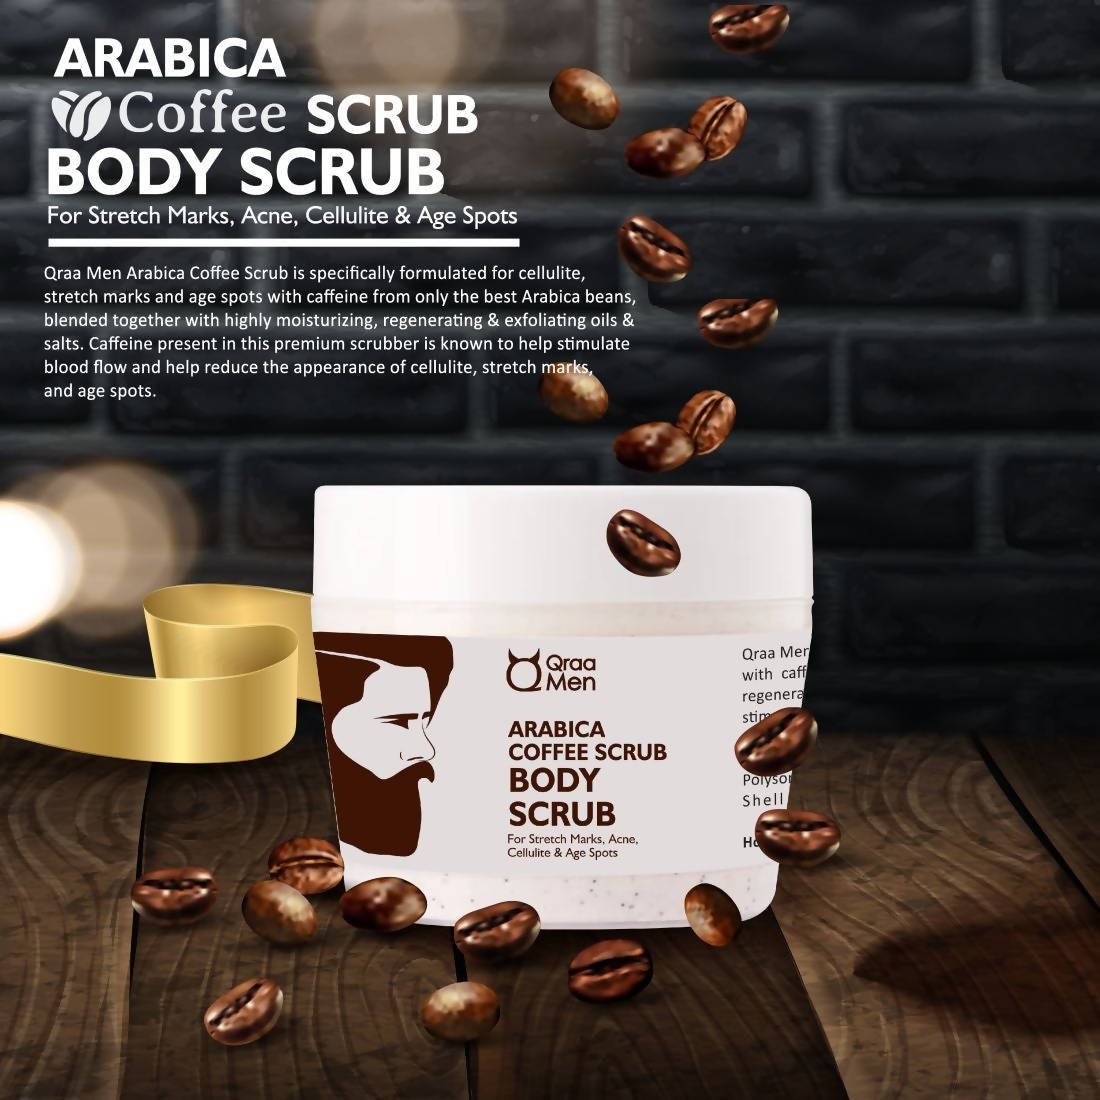 Qraa Men Arabica Coffee Scrub Body Scrub